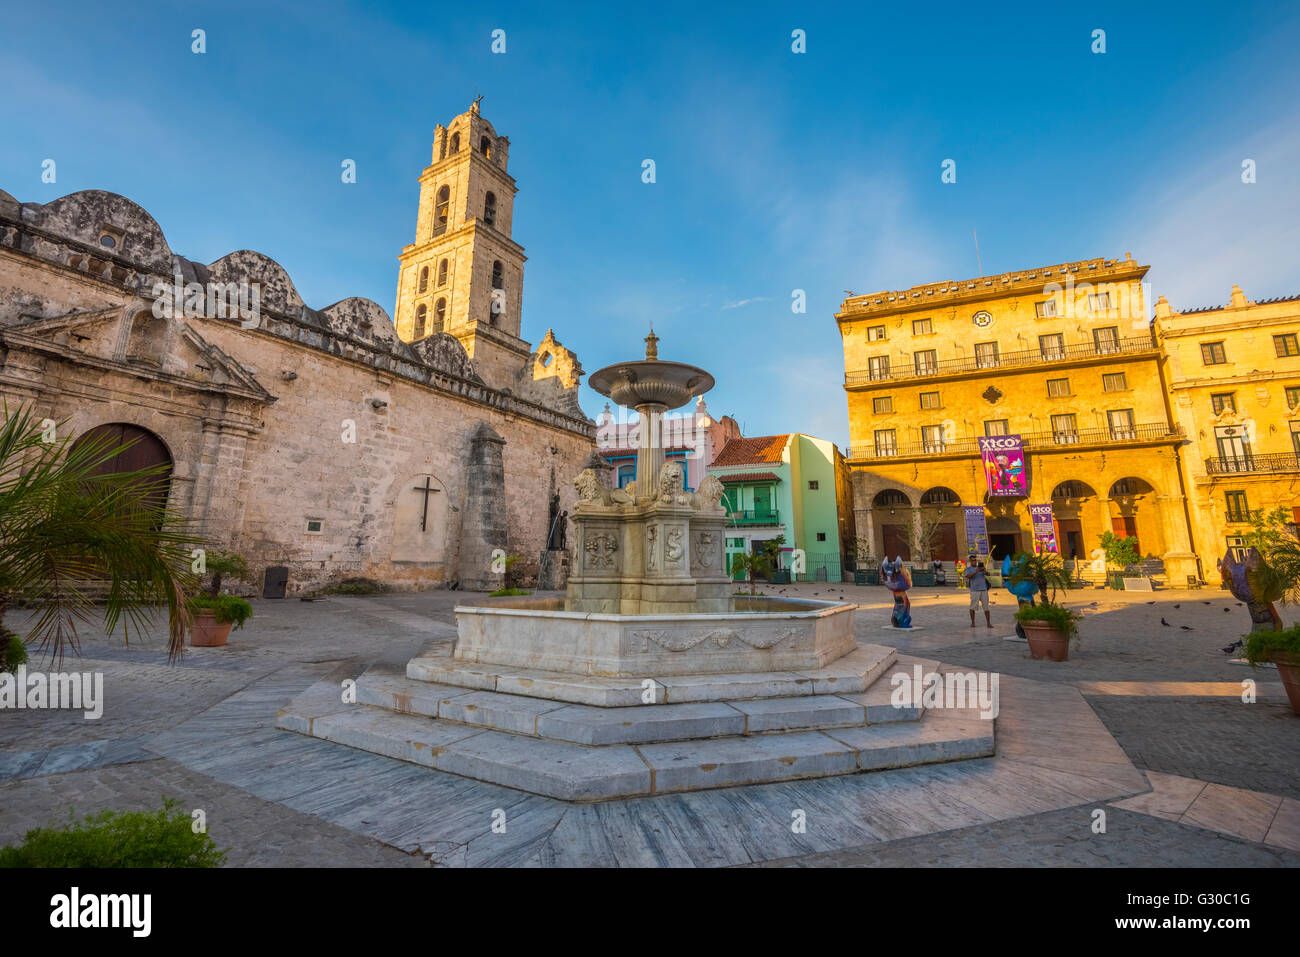 Plaza de San Francisco de Asis, La Habana Vieja (Old Havana), UNESCO World Heritage Site, Havana, Cuba, West Indies, Caribbean Stock Photo